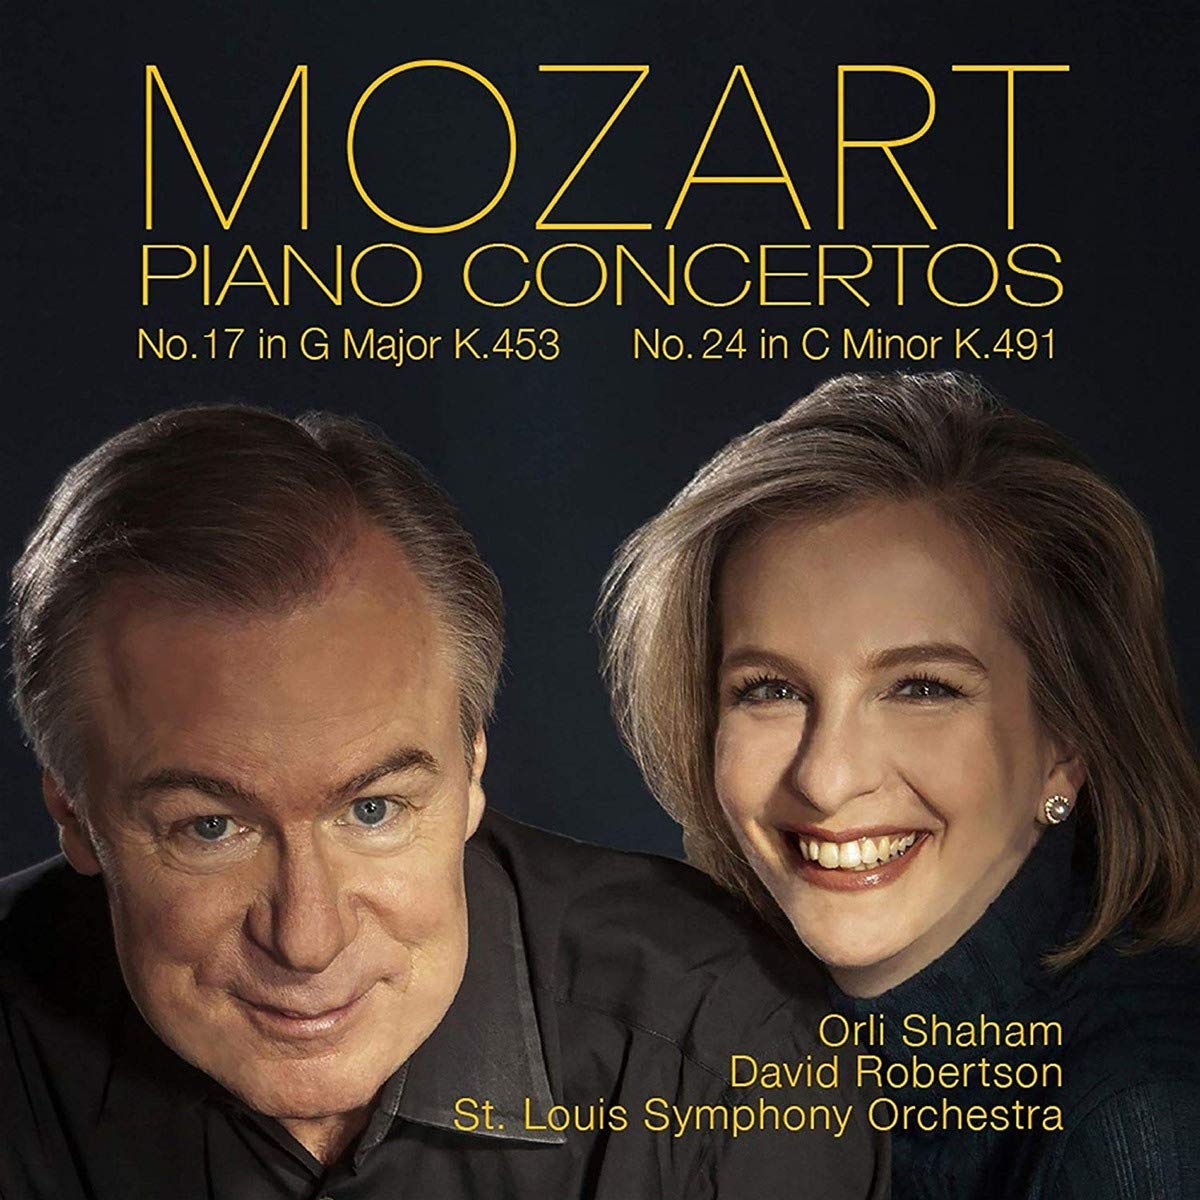 Mozart Piano Concertos album cover